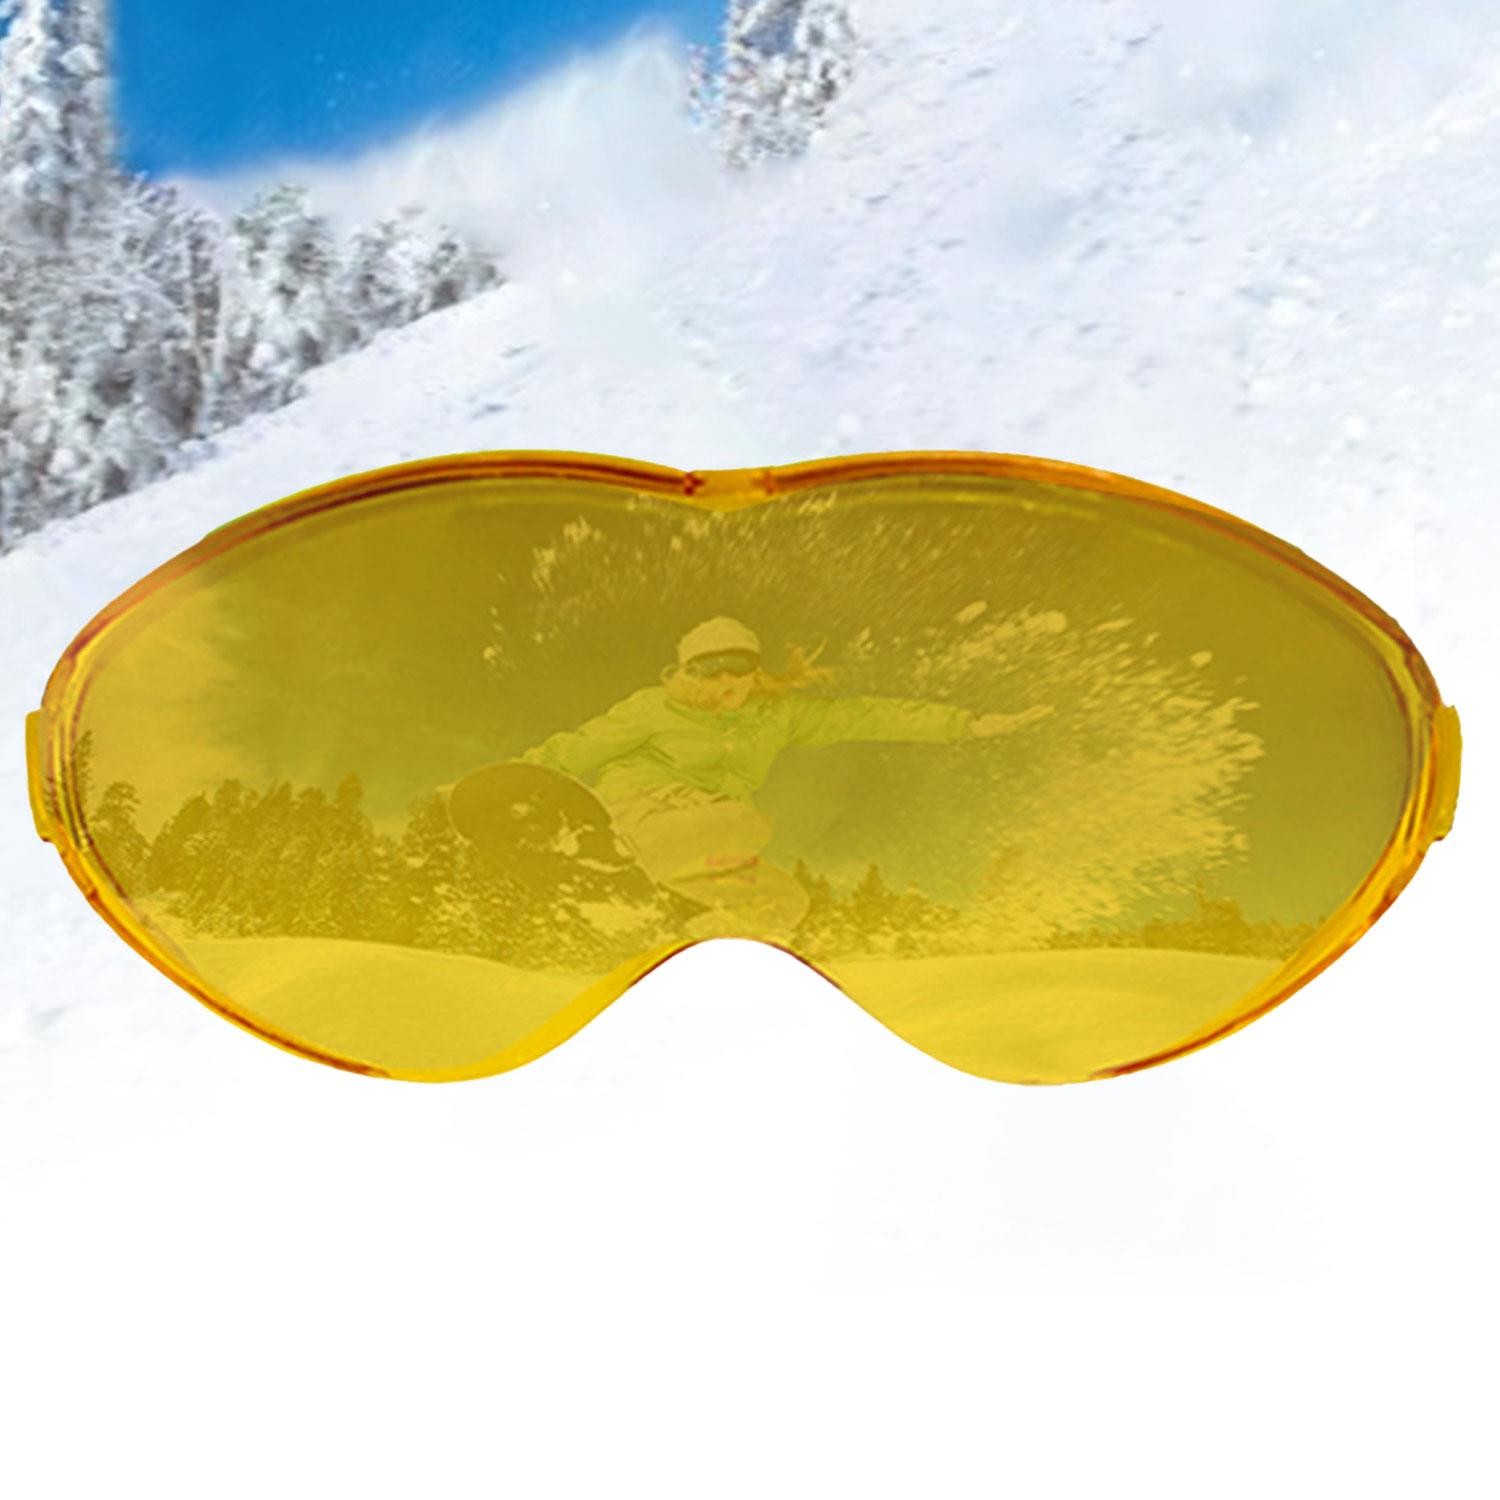 Bellasimo Çerçevesiz Kayak Gözlüğü Camı Lens Değiştirebilir Cam Antifog Güneş Kar Gözlük Camı Sarı